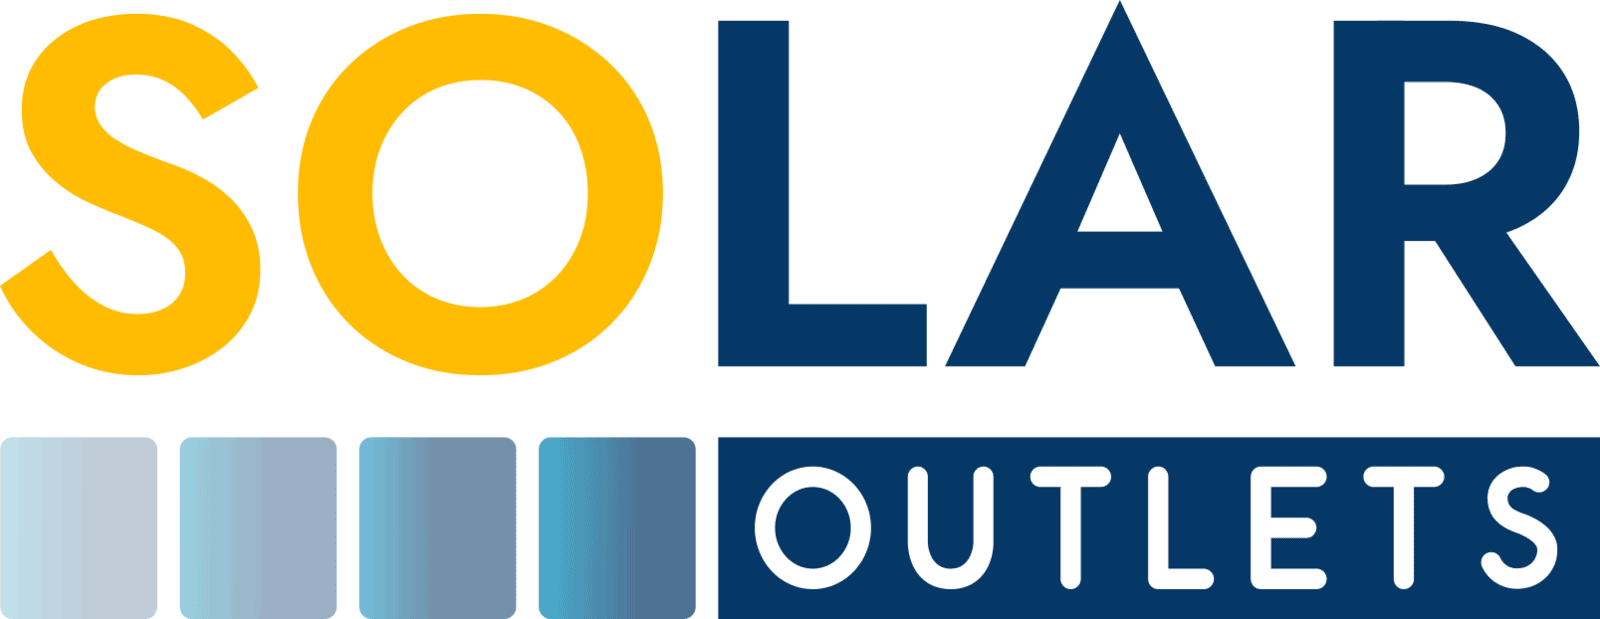 Solar Outlets LLC